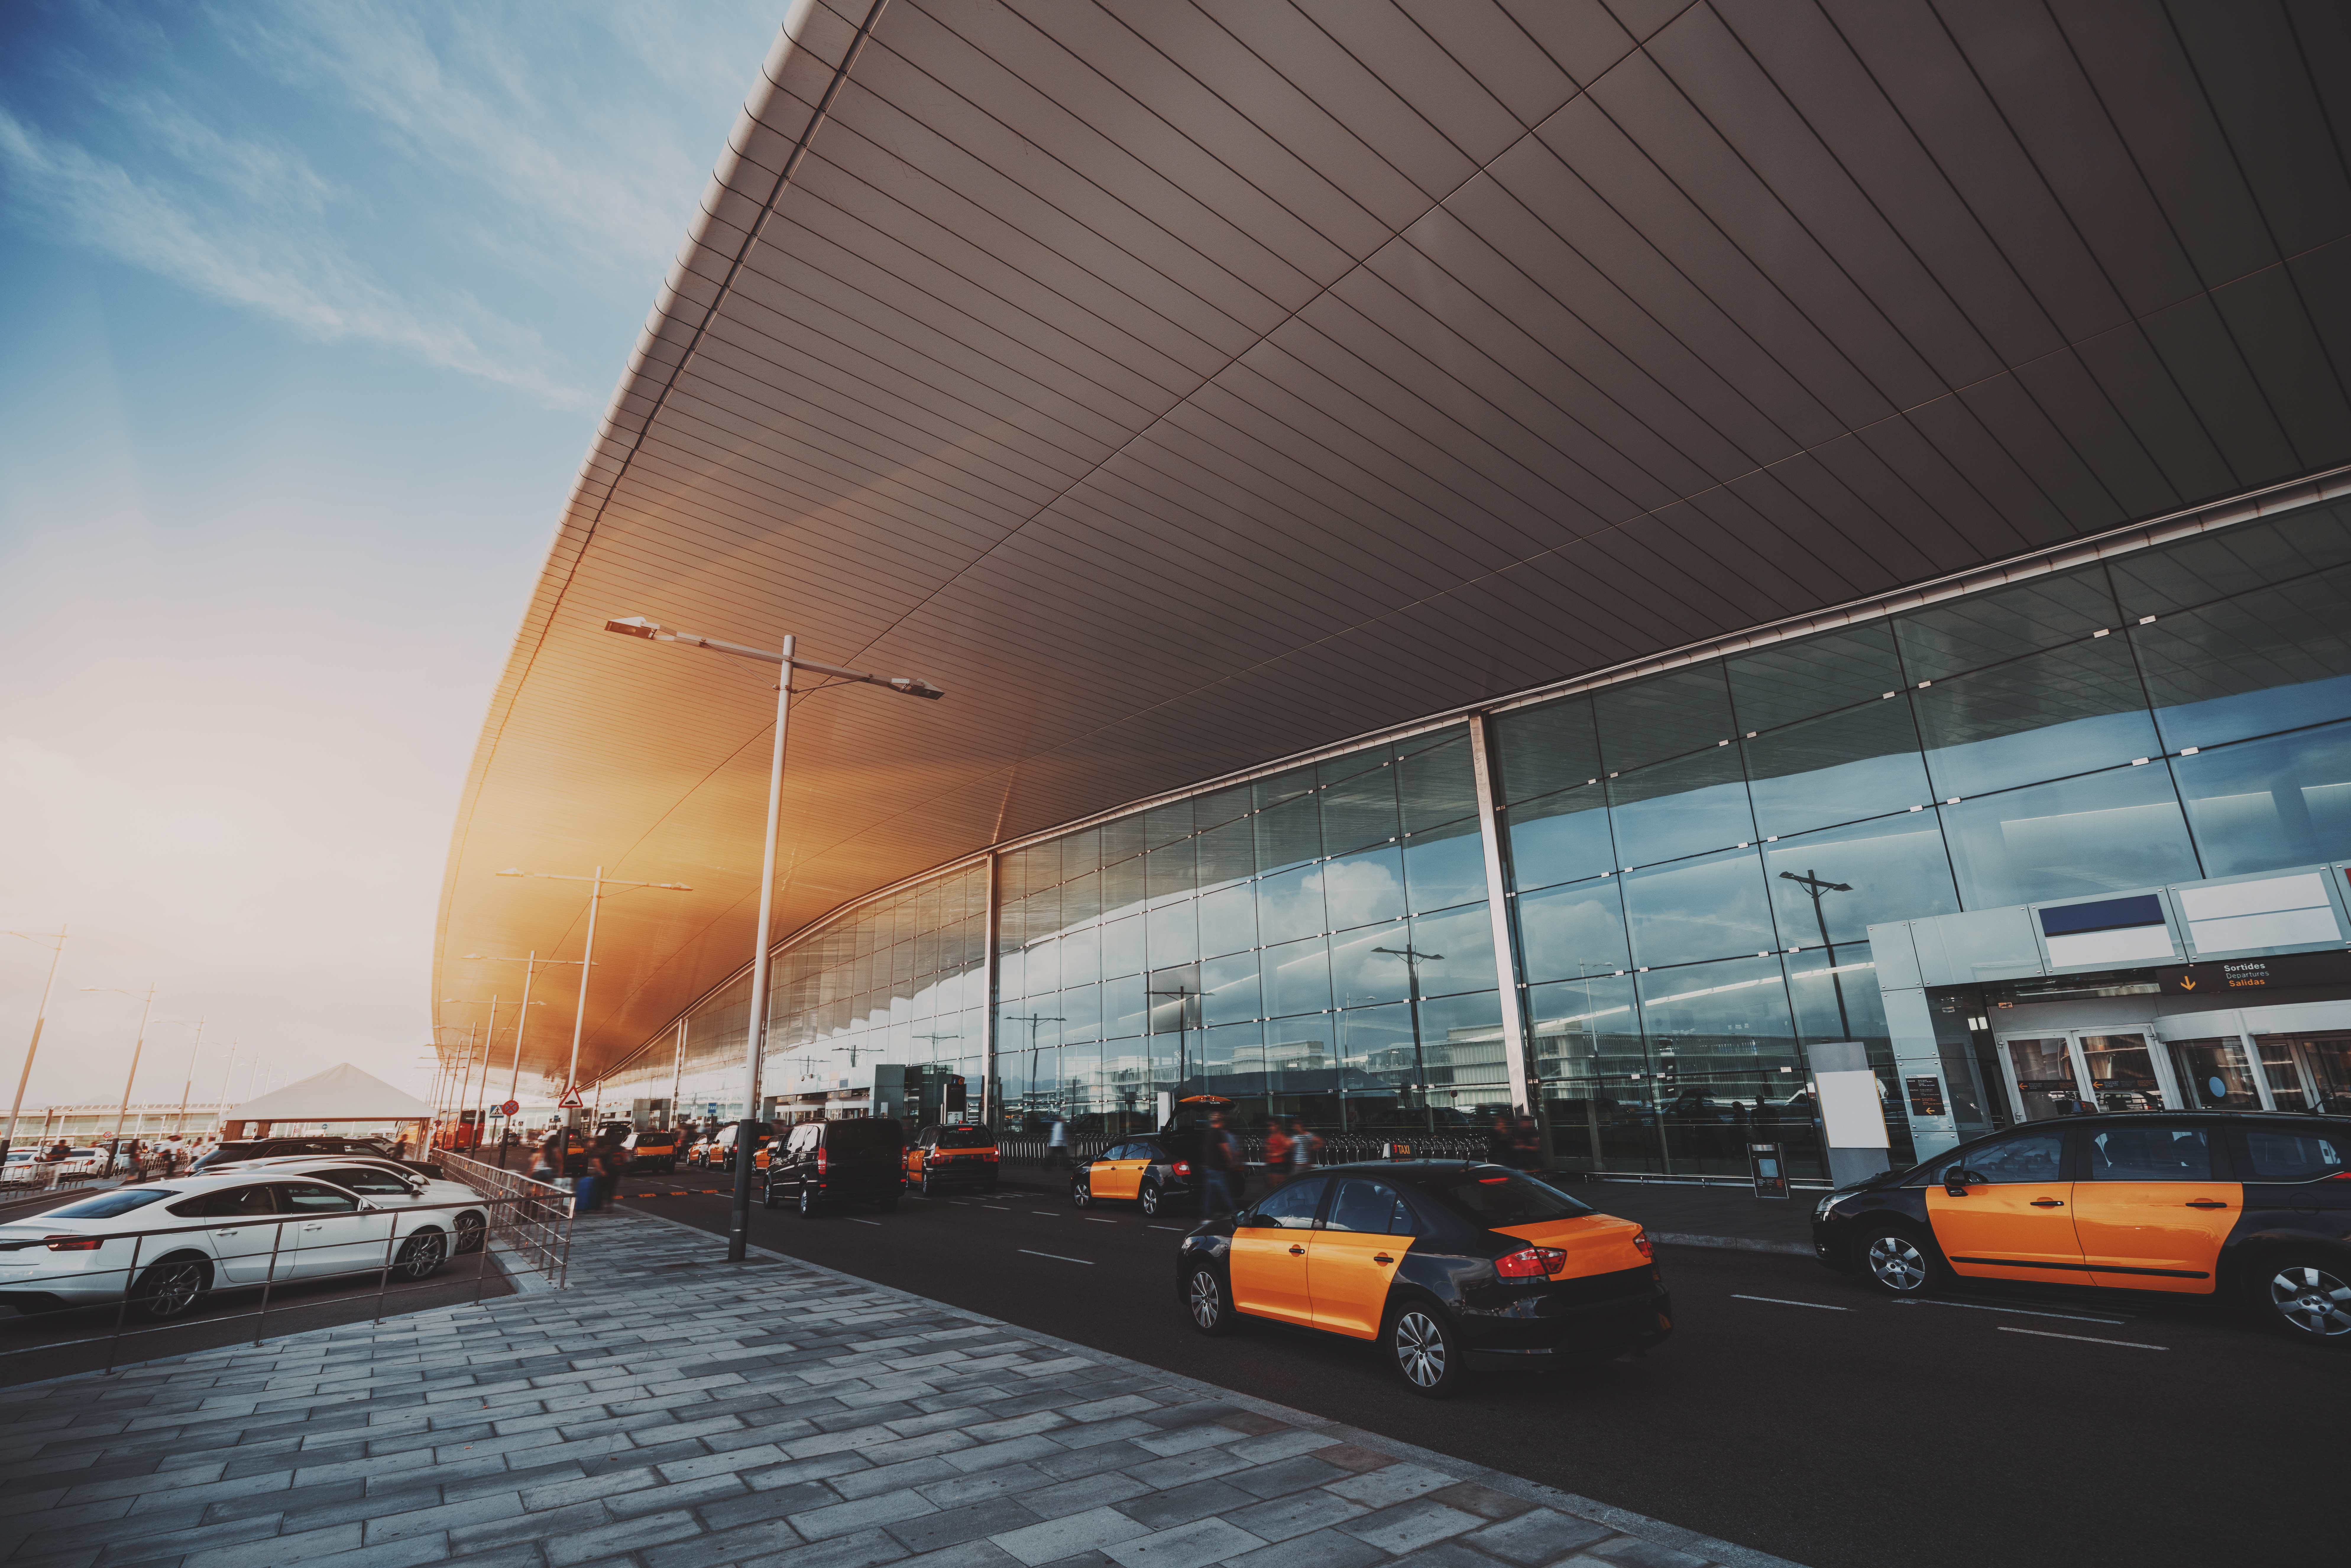 Cabina frente a la entrada de un aeropuerto moderno | Fuente: Shutterstock